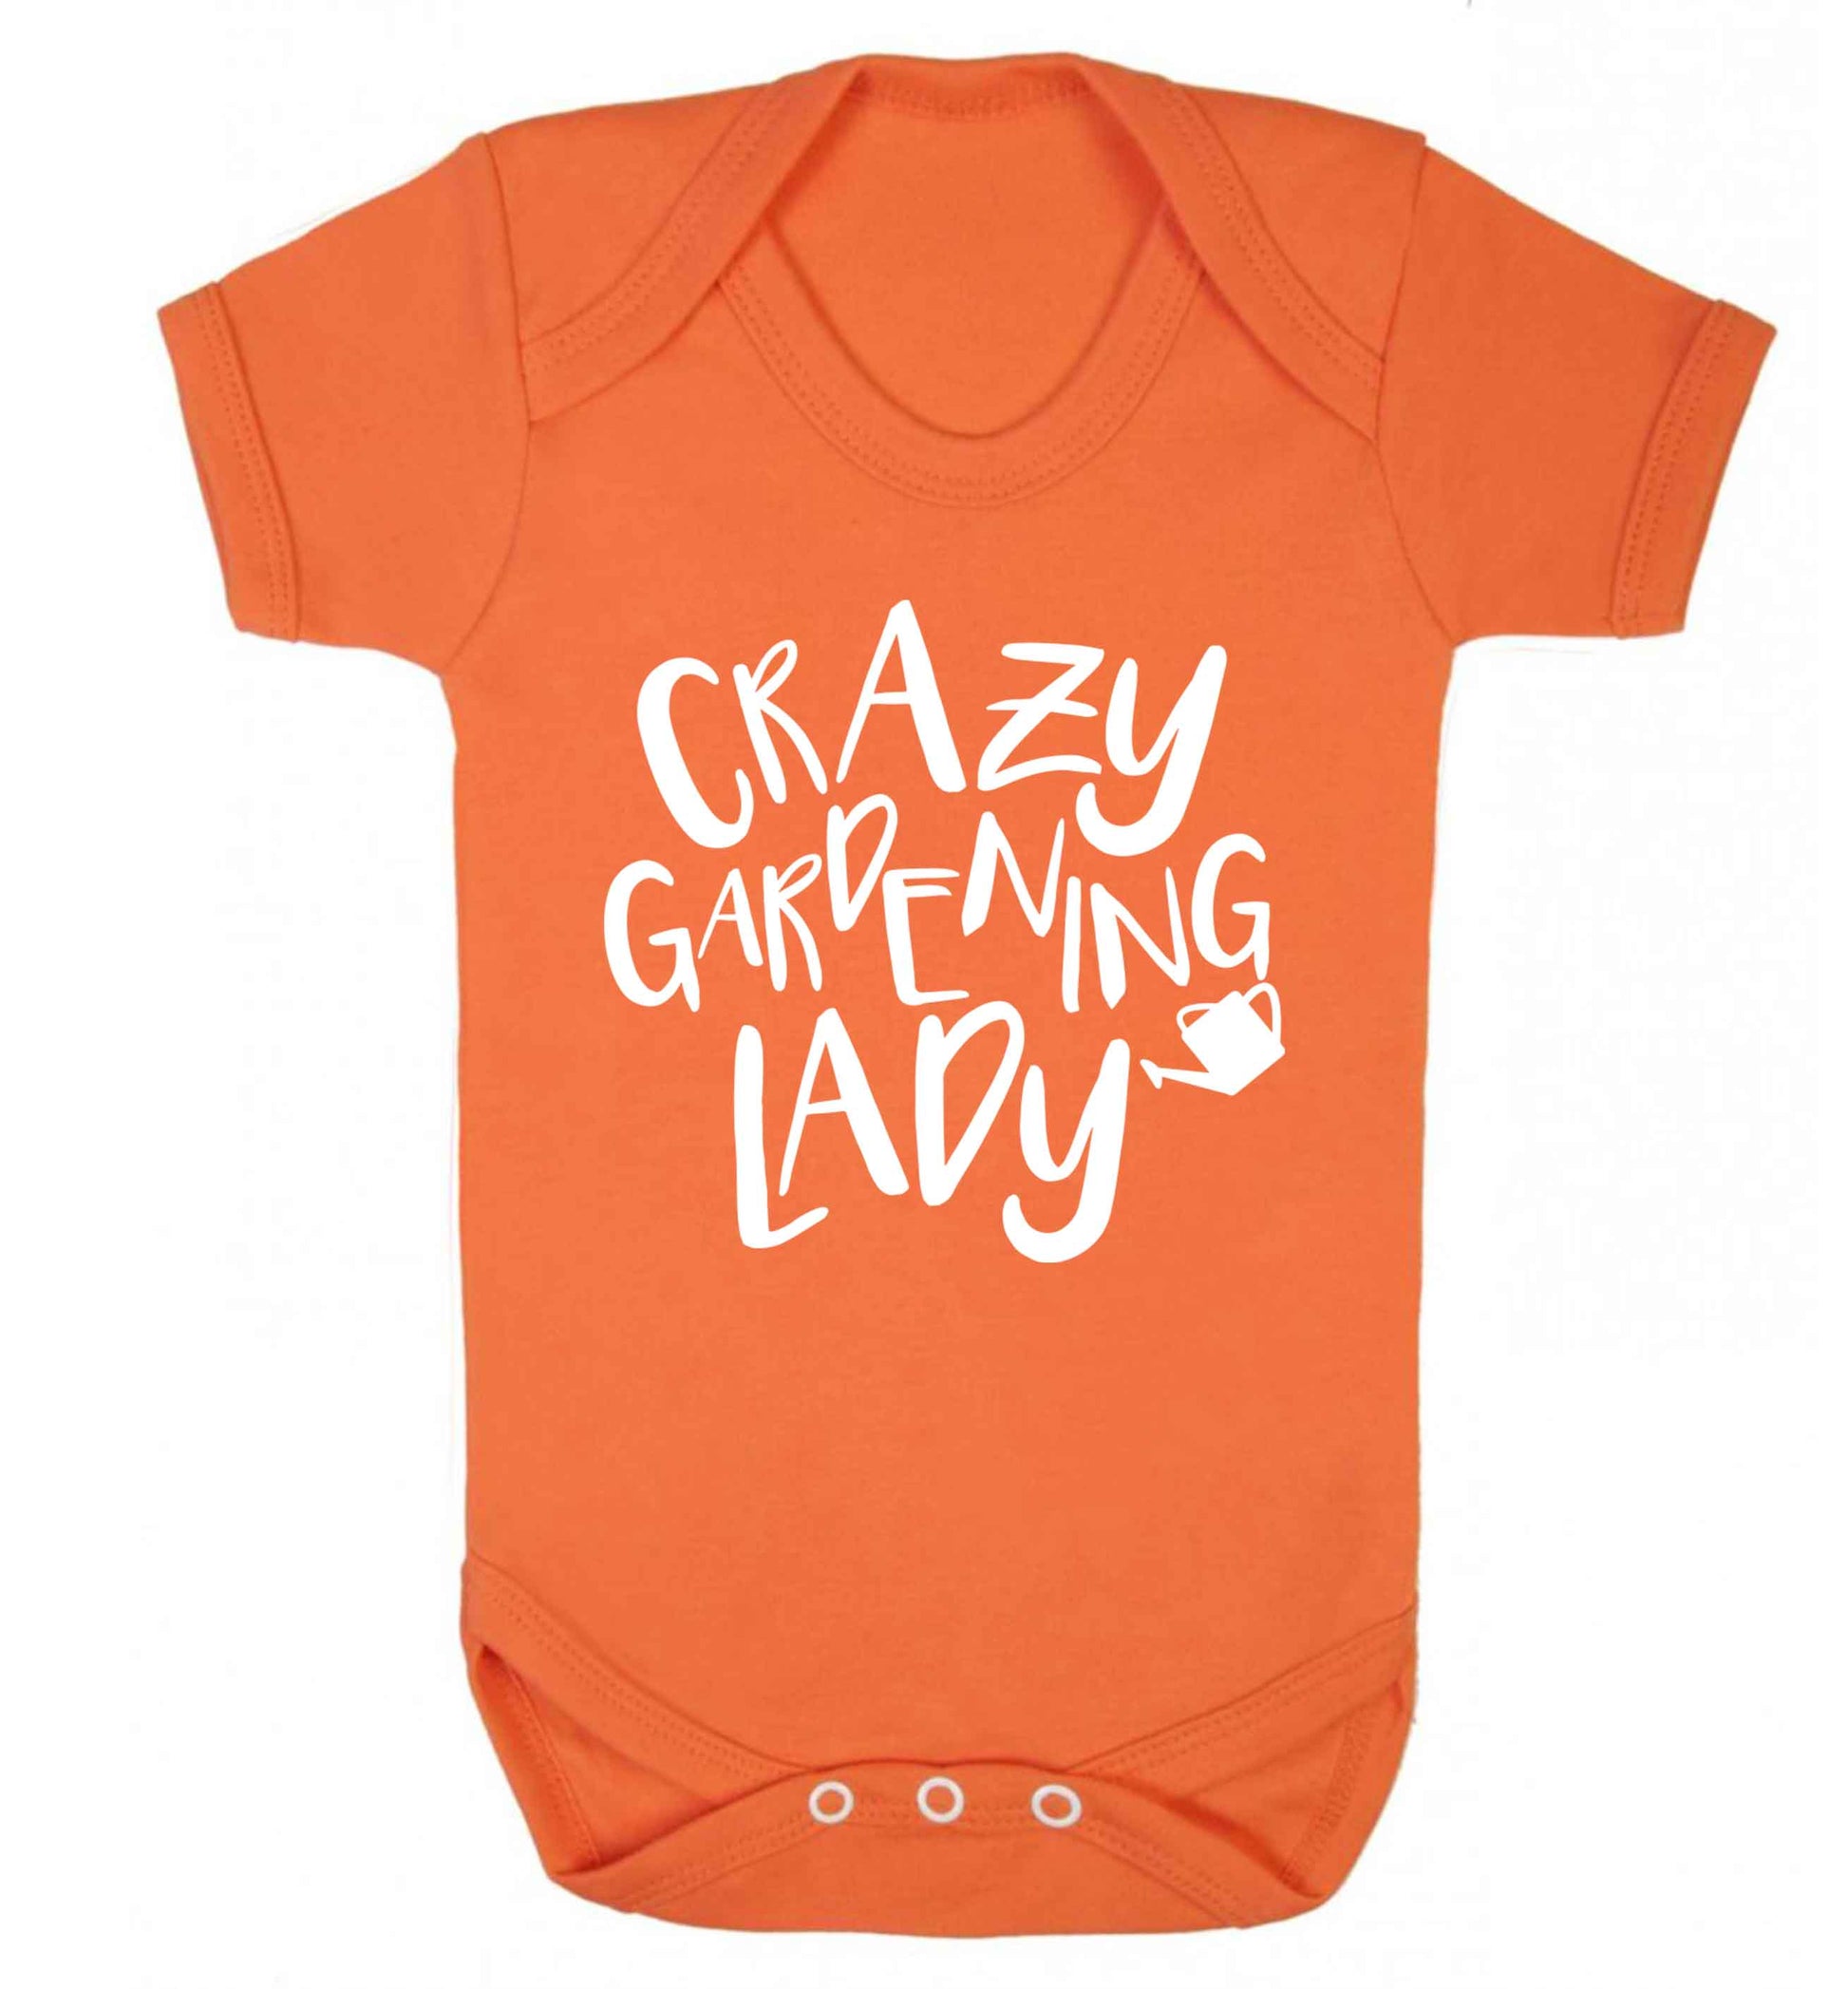 Crazy gardening lady Baby Vest orange 18-24 months